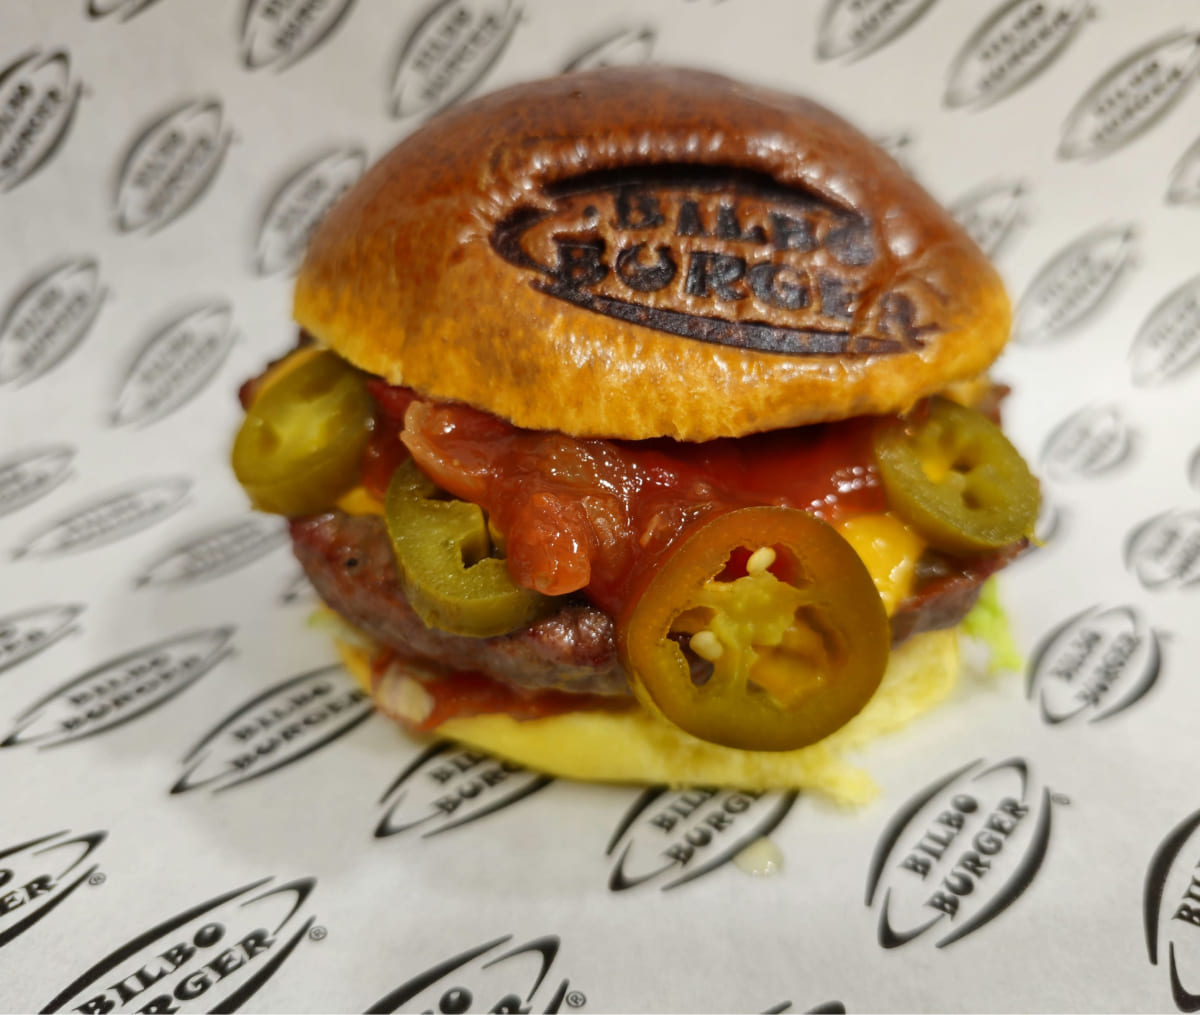 Hamburguesa de Bilboburger con capas de jalapeños y salsa, destacando el pan con el logo grabado y servida en papel de marca.